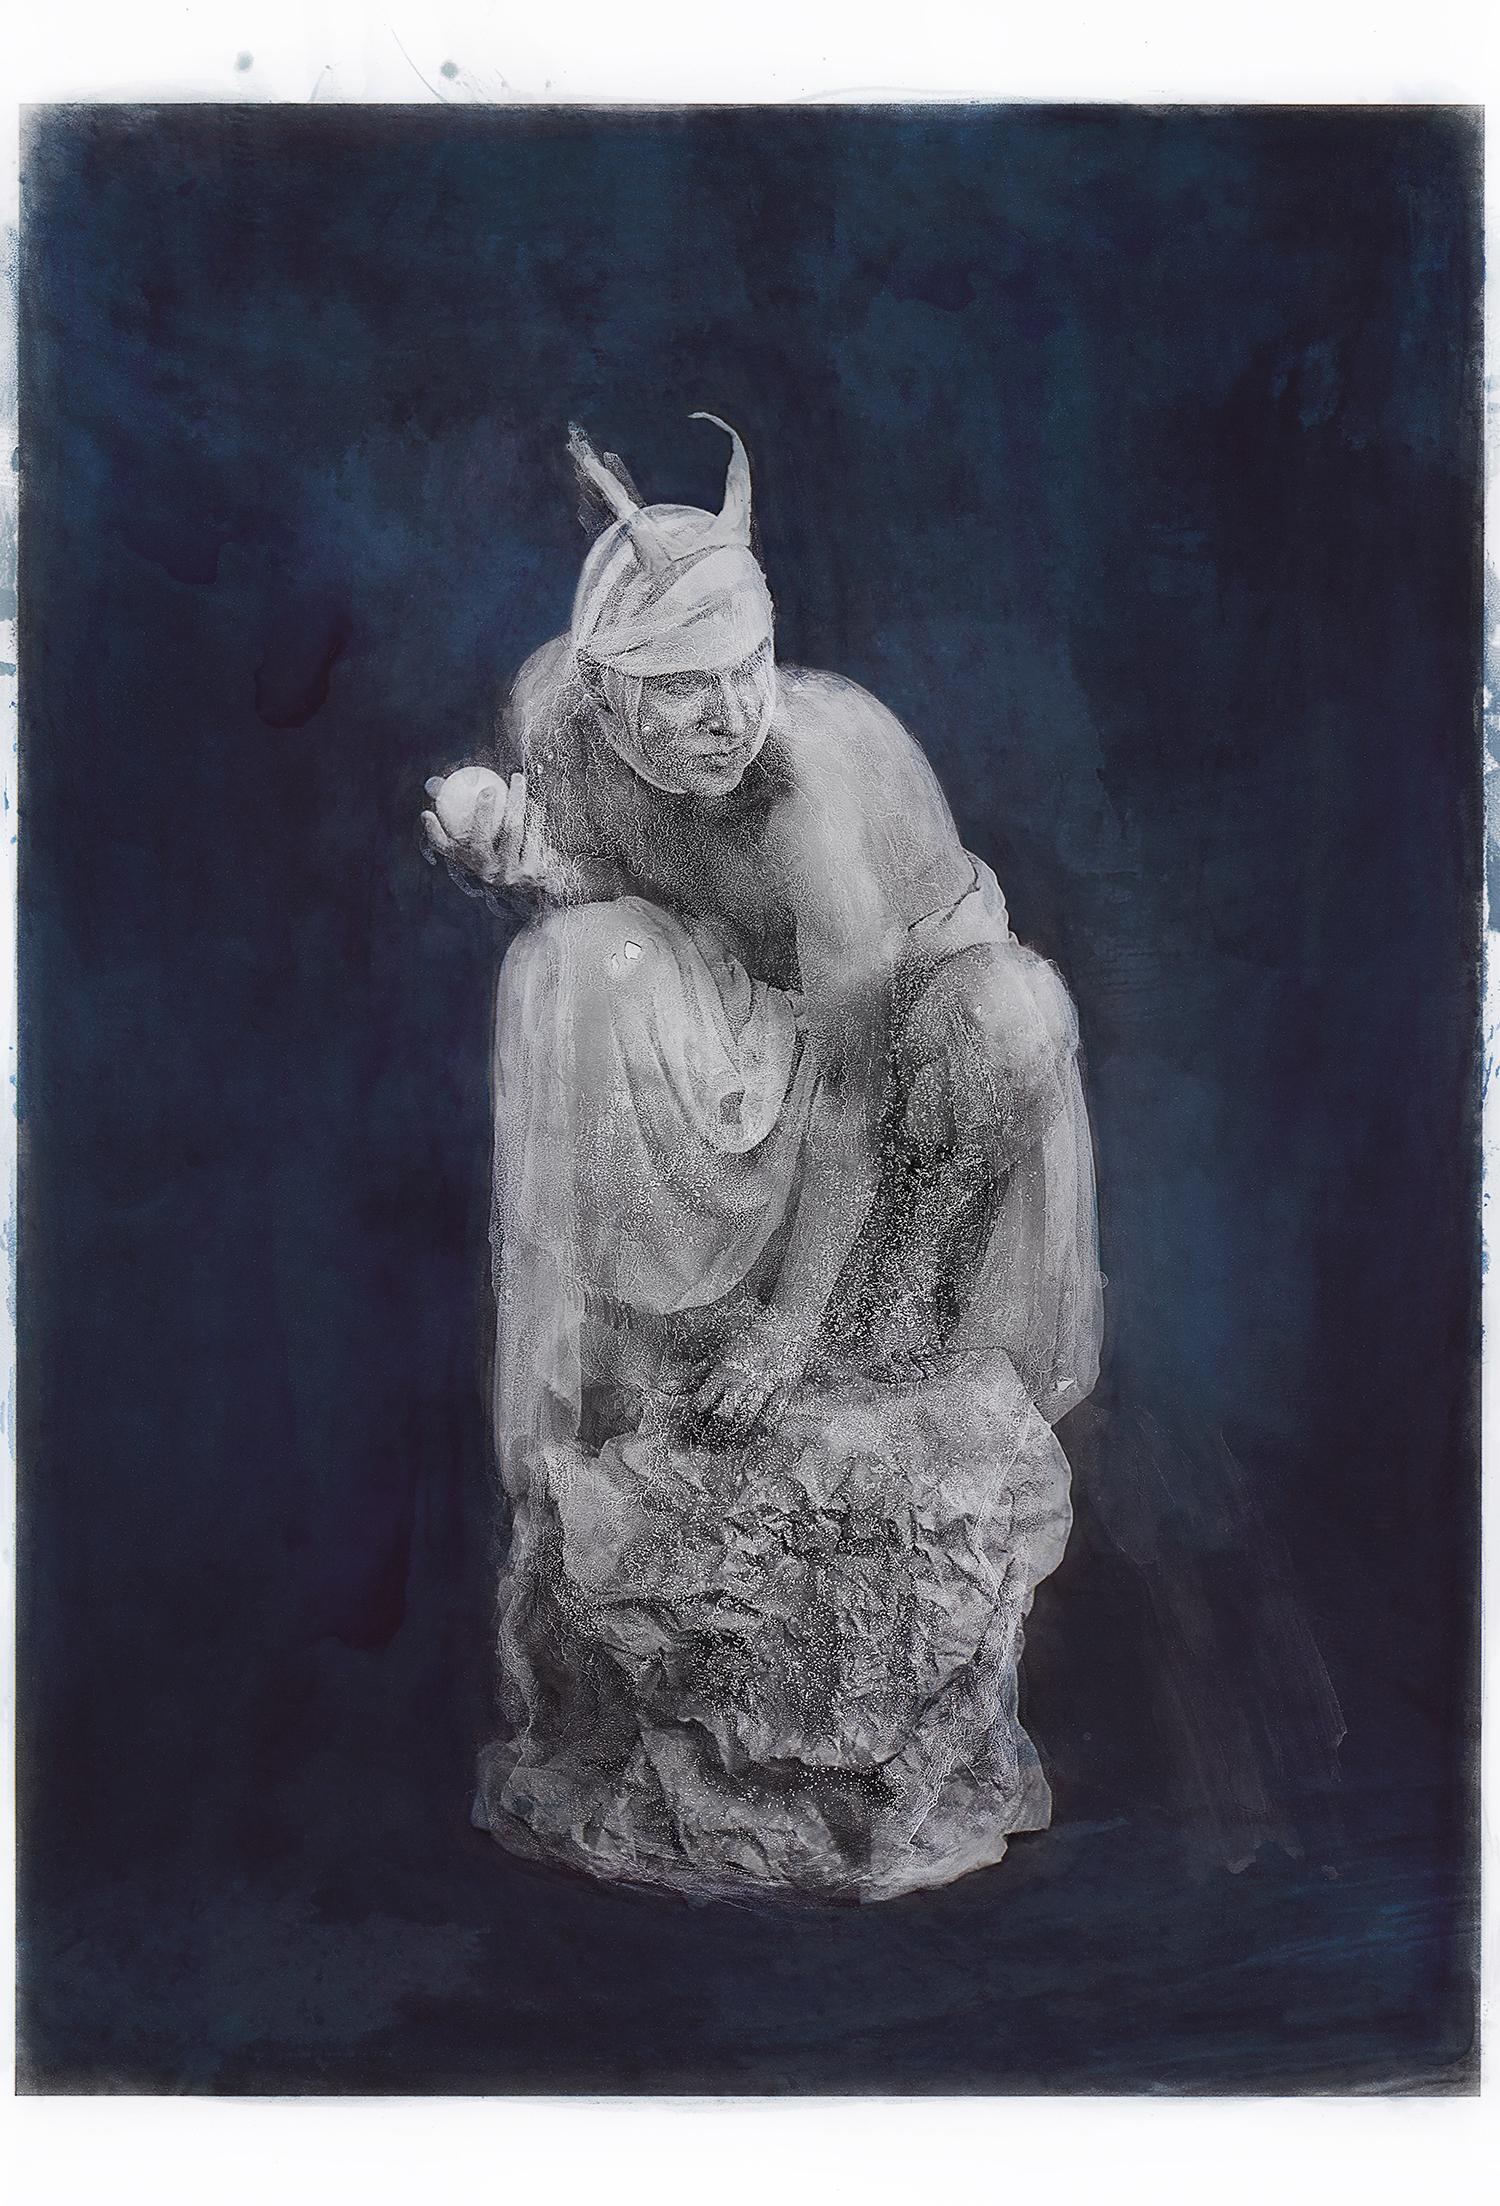 Portrait Photograph Katie Eleanor - Impression colorée à la main en bleu - Portrait d'un diable imbriqué dans du marbre